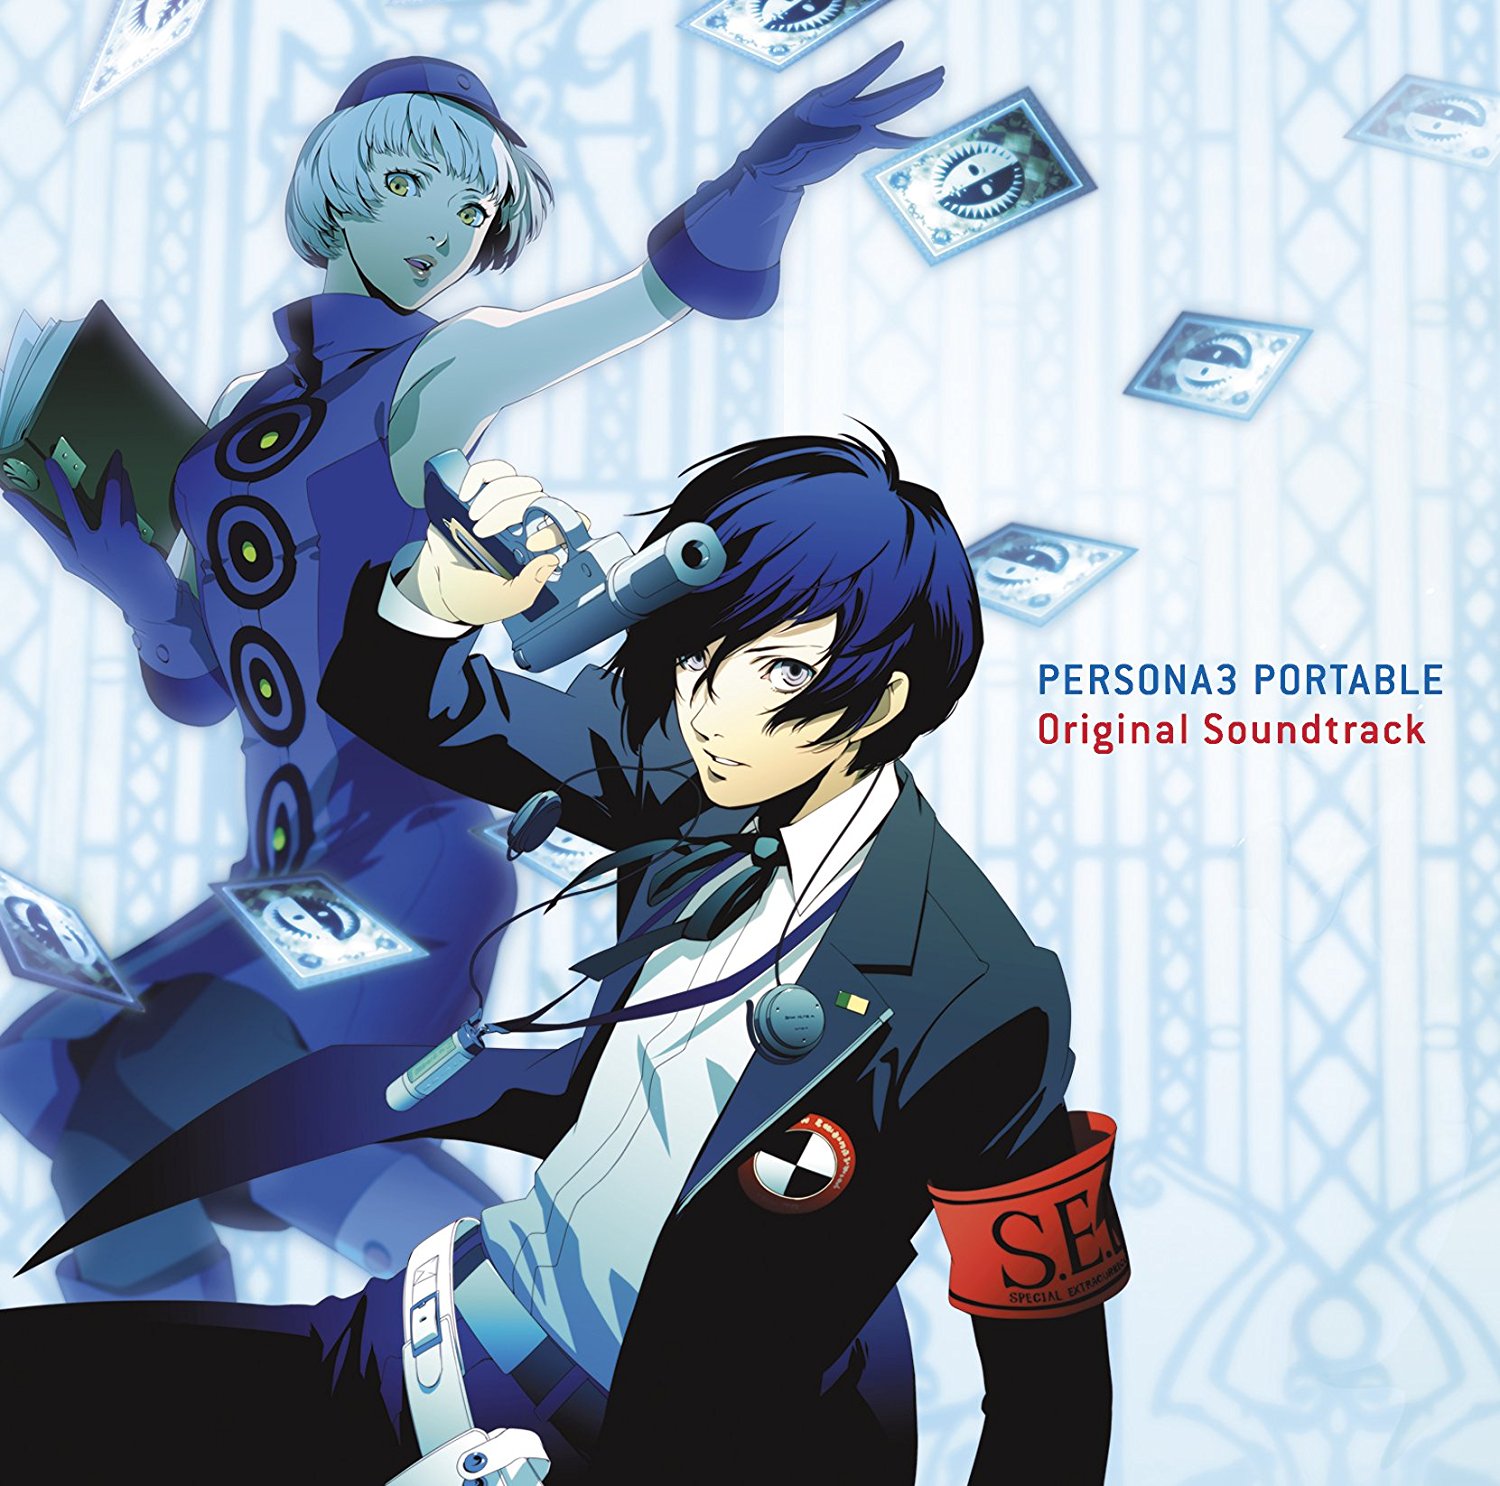 Persona 3 Portable Original Soundtrack | Megami Tensei Wiki | FANDOM